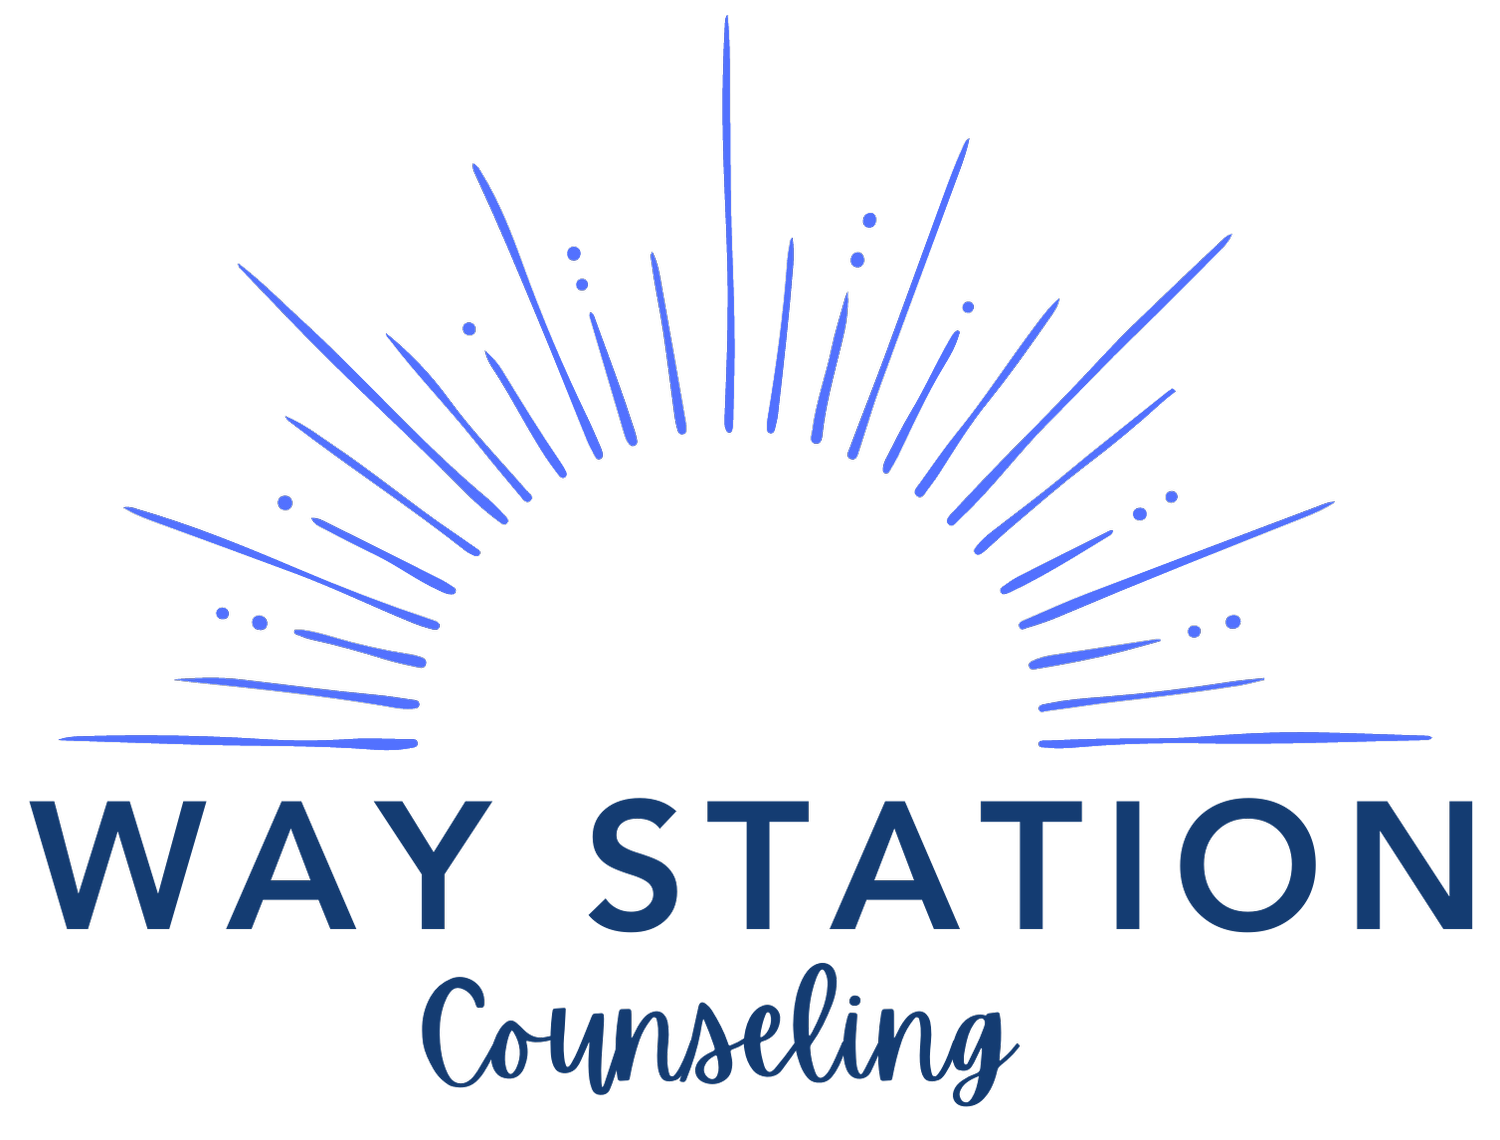 Way Station Counseling, LLC